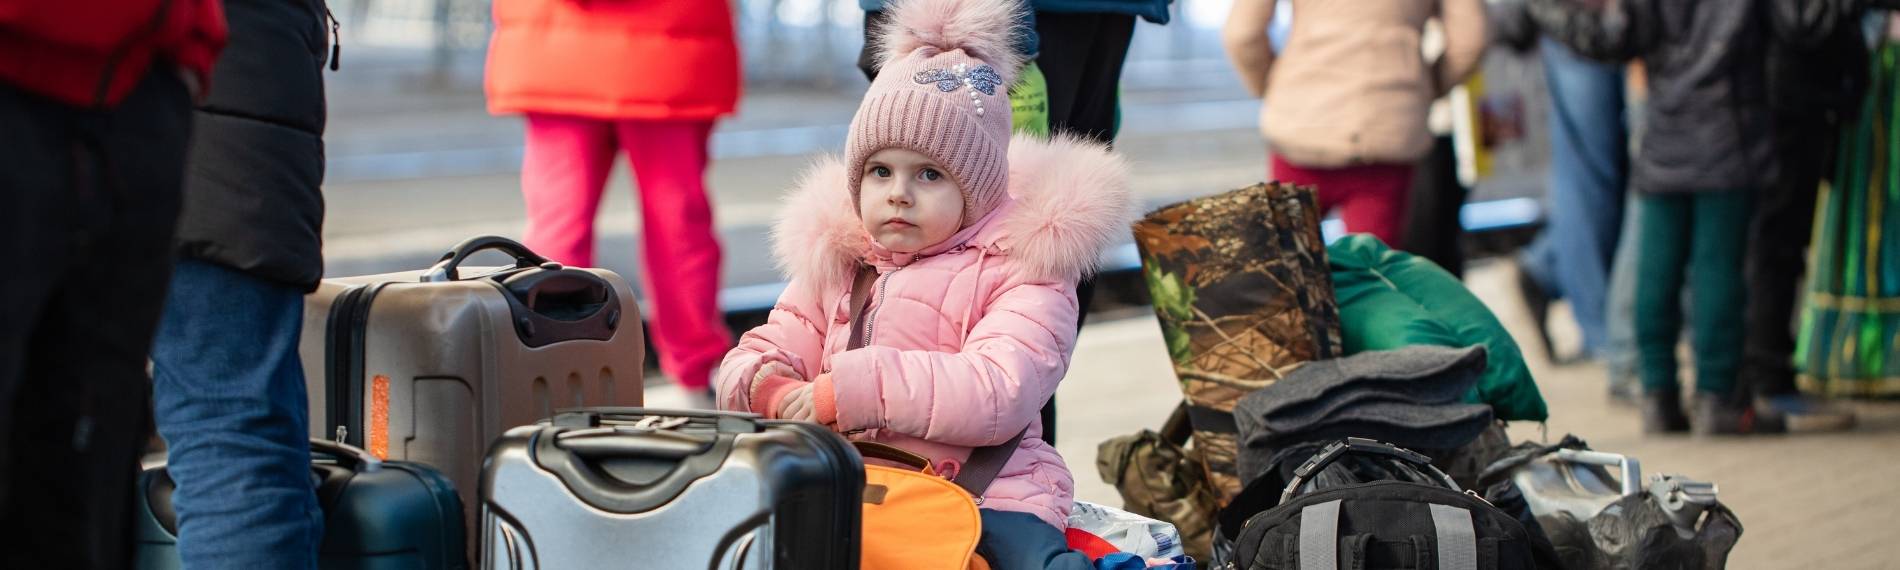 Flüchtlinge Ukraine Kind auf Koffern